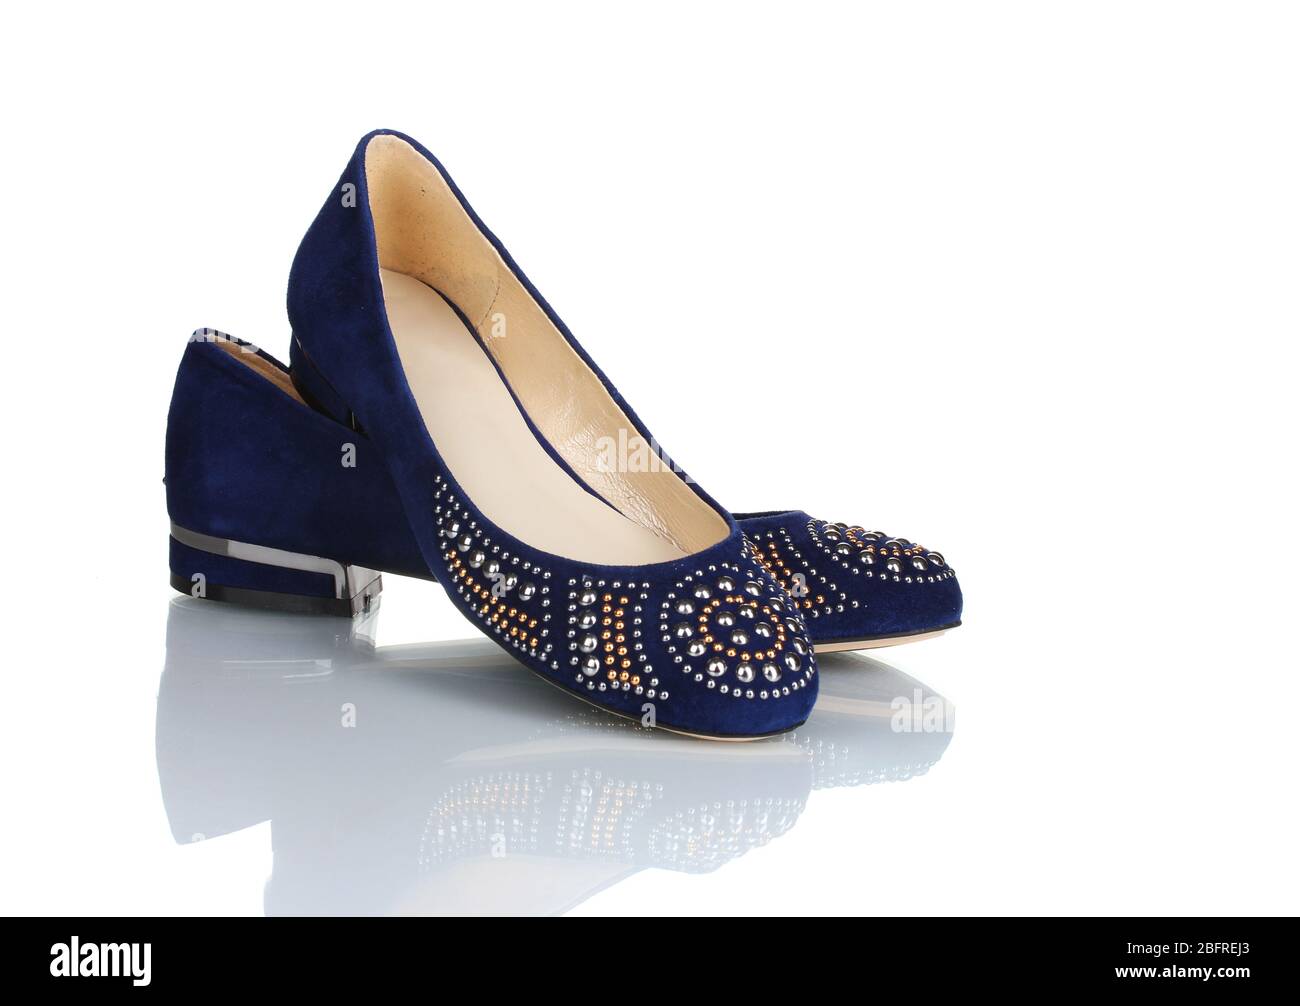 Elegante blaue flache Schuhe für Frauen in Steinen isoliert auf weiß  Stockfotografie - Alamy